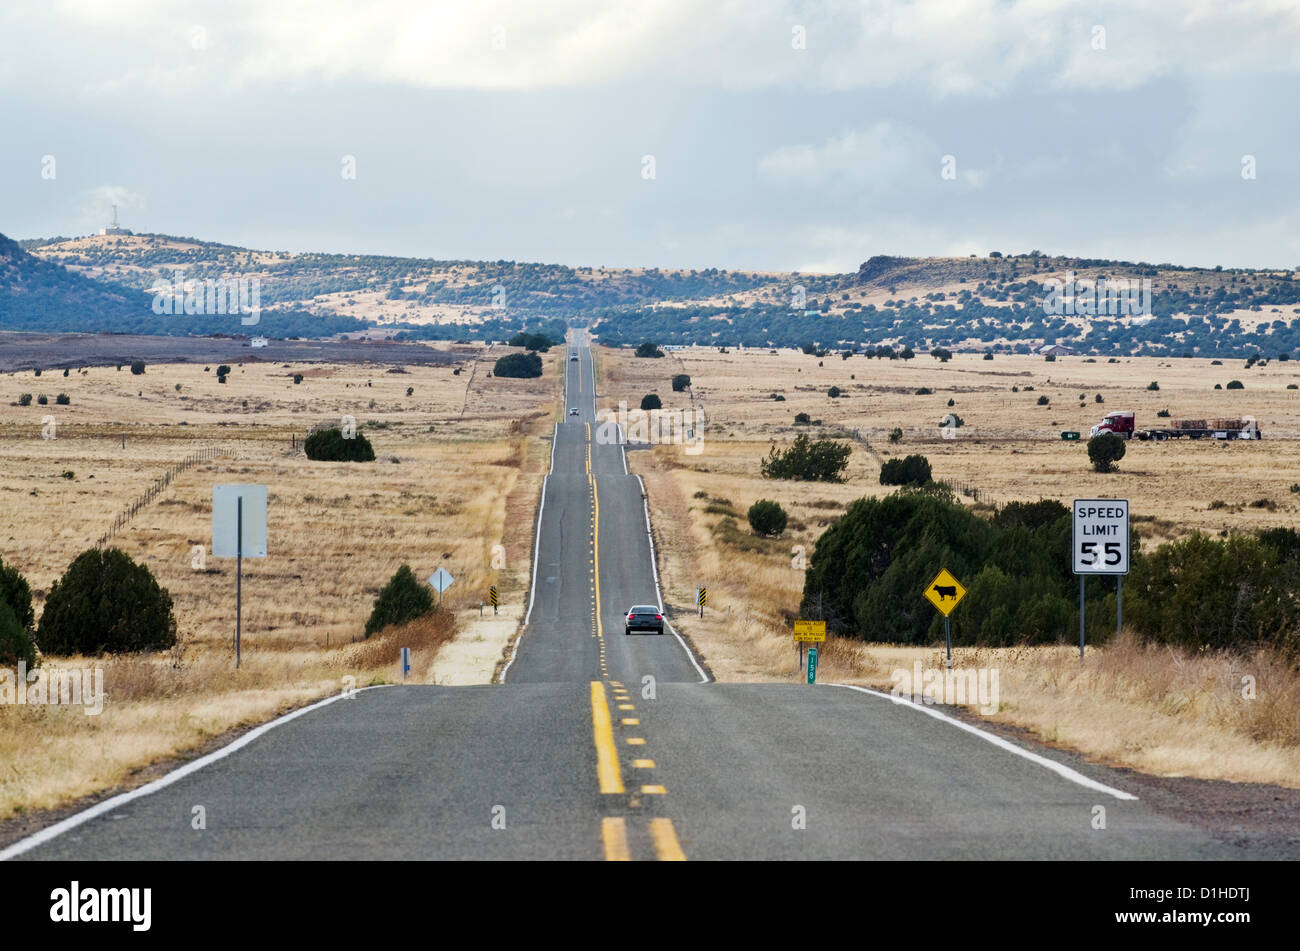 La célèbre Route 66, route, s'étend à travers le désert de l'Arizona près de Seligman, NM. Banque D'Images